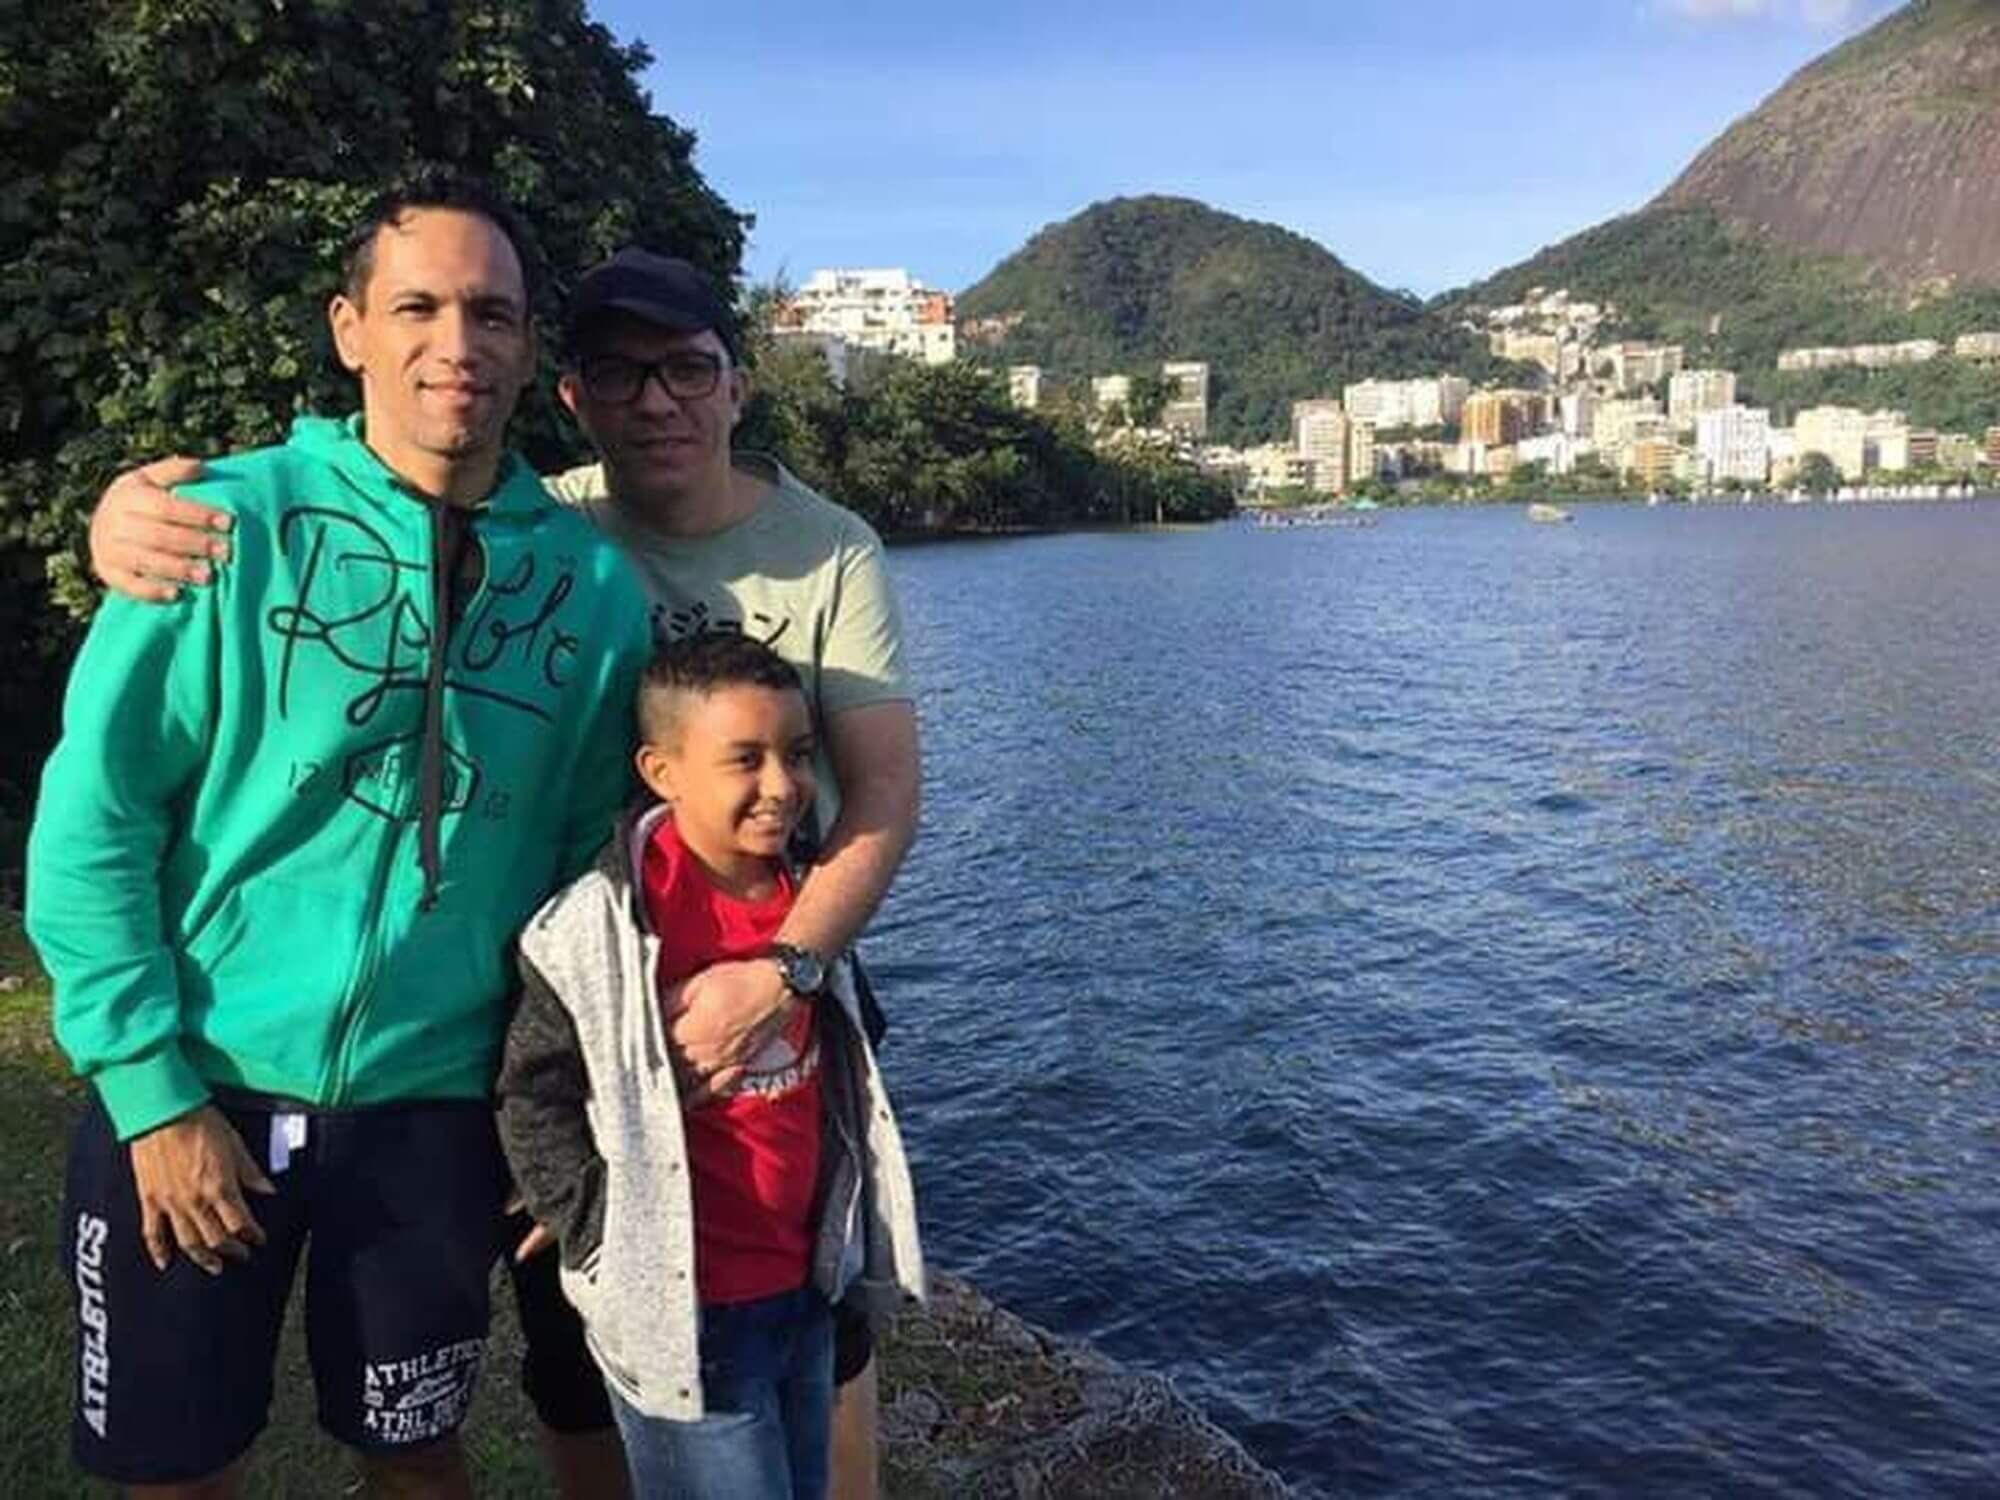 Bimbo adottato da coppia gay scrive un tema che sta emozionando il web: "Non mi voleva nessuno" - brasile - Gay.it